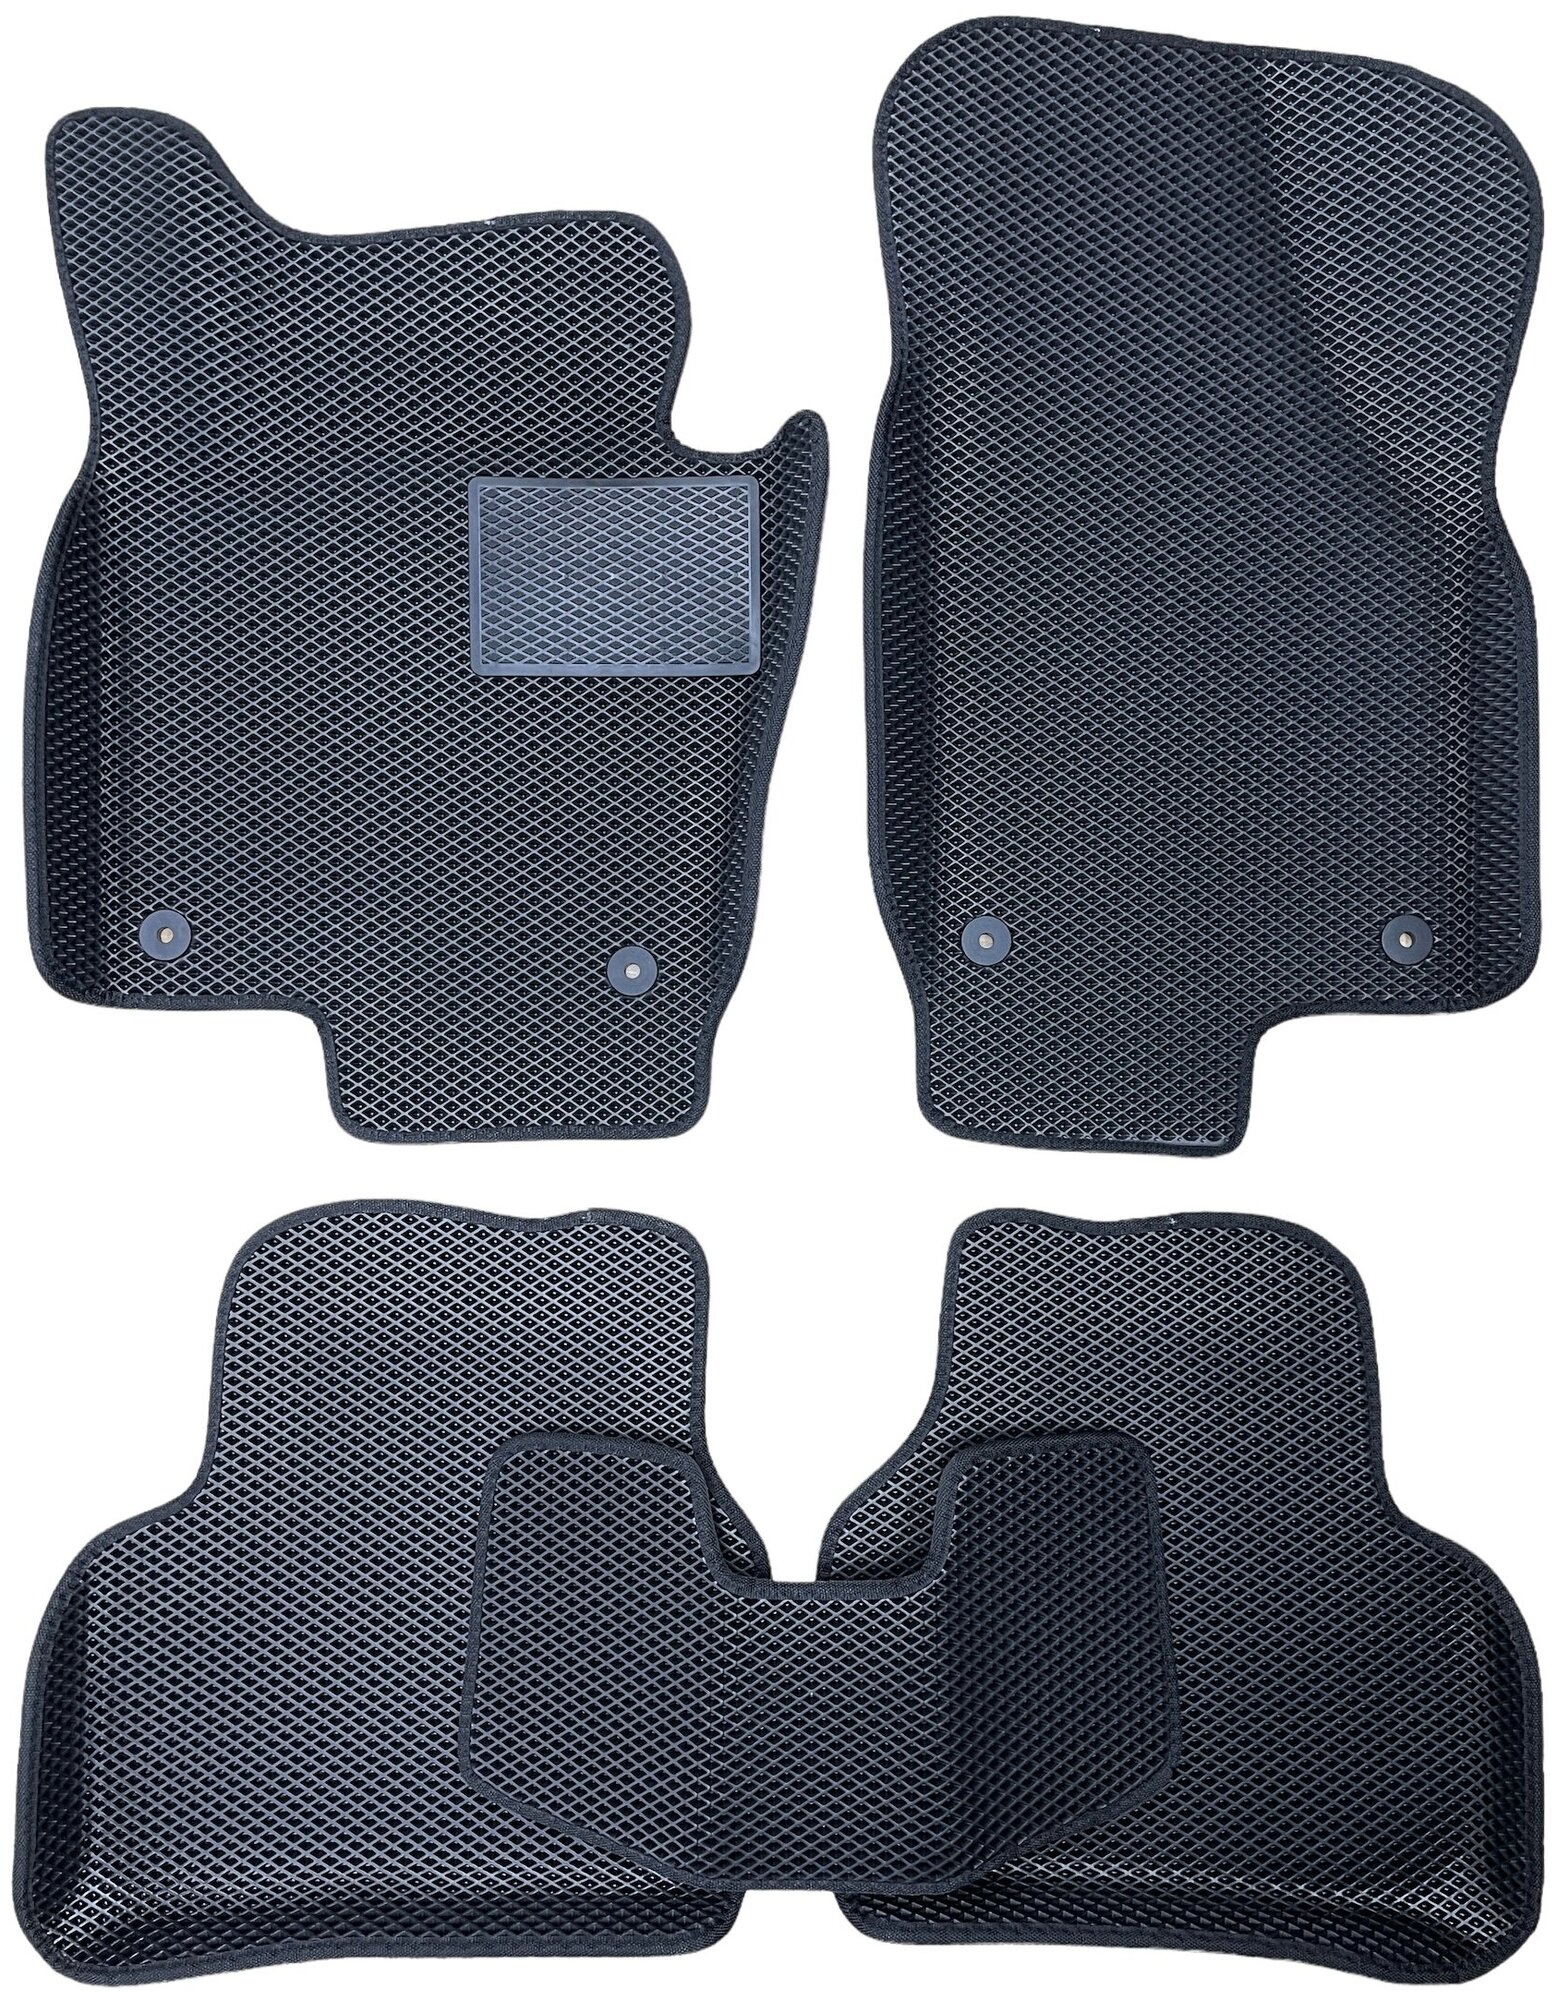 Автомобильные коврики ЕВА / EVA для Volkswagen Passat B6 2005-2010 / Фольксваген Пассат Б6 / 3D 3д / с бортами / черный-черный + резиновый подпятник